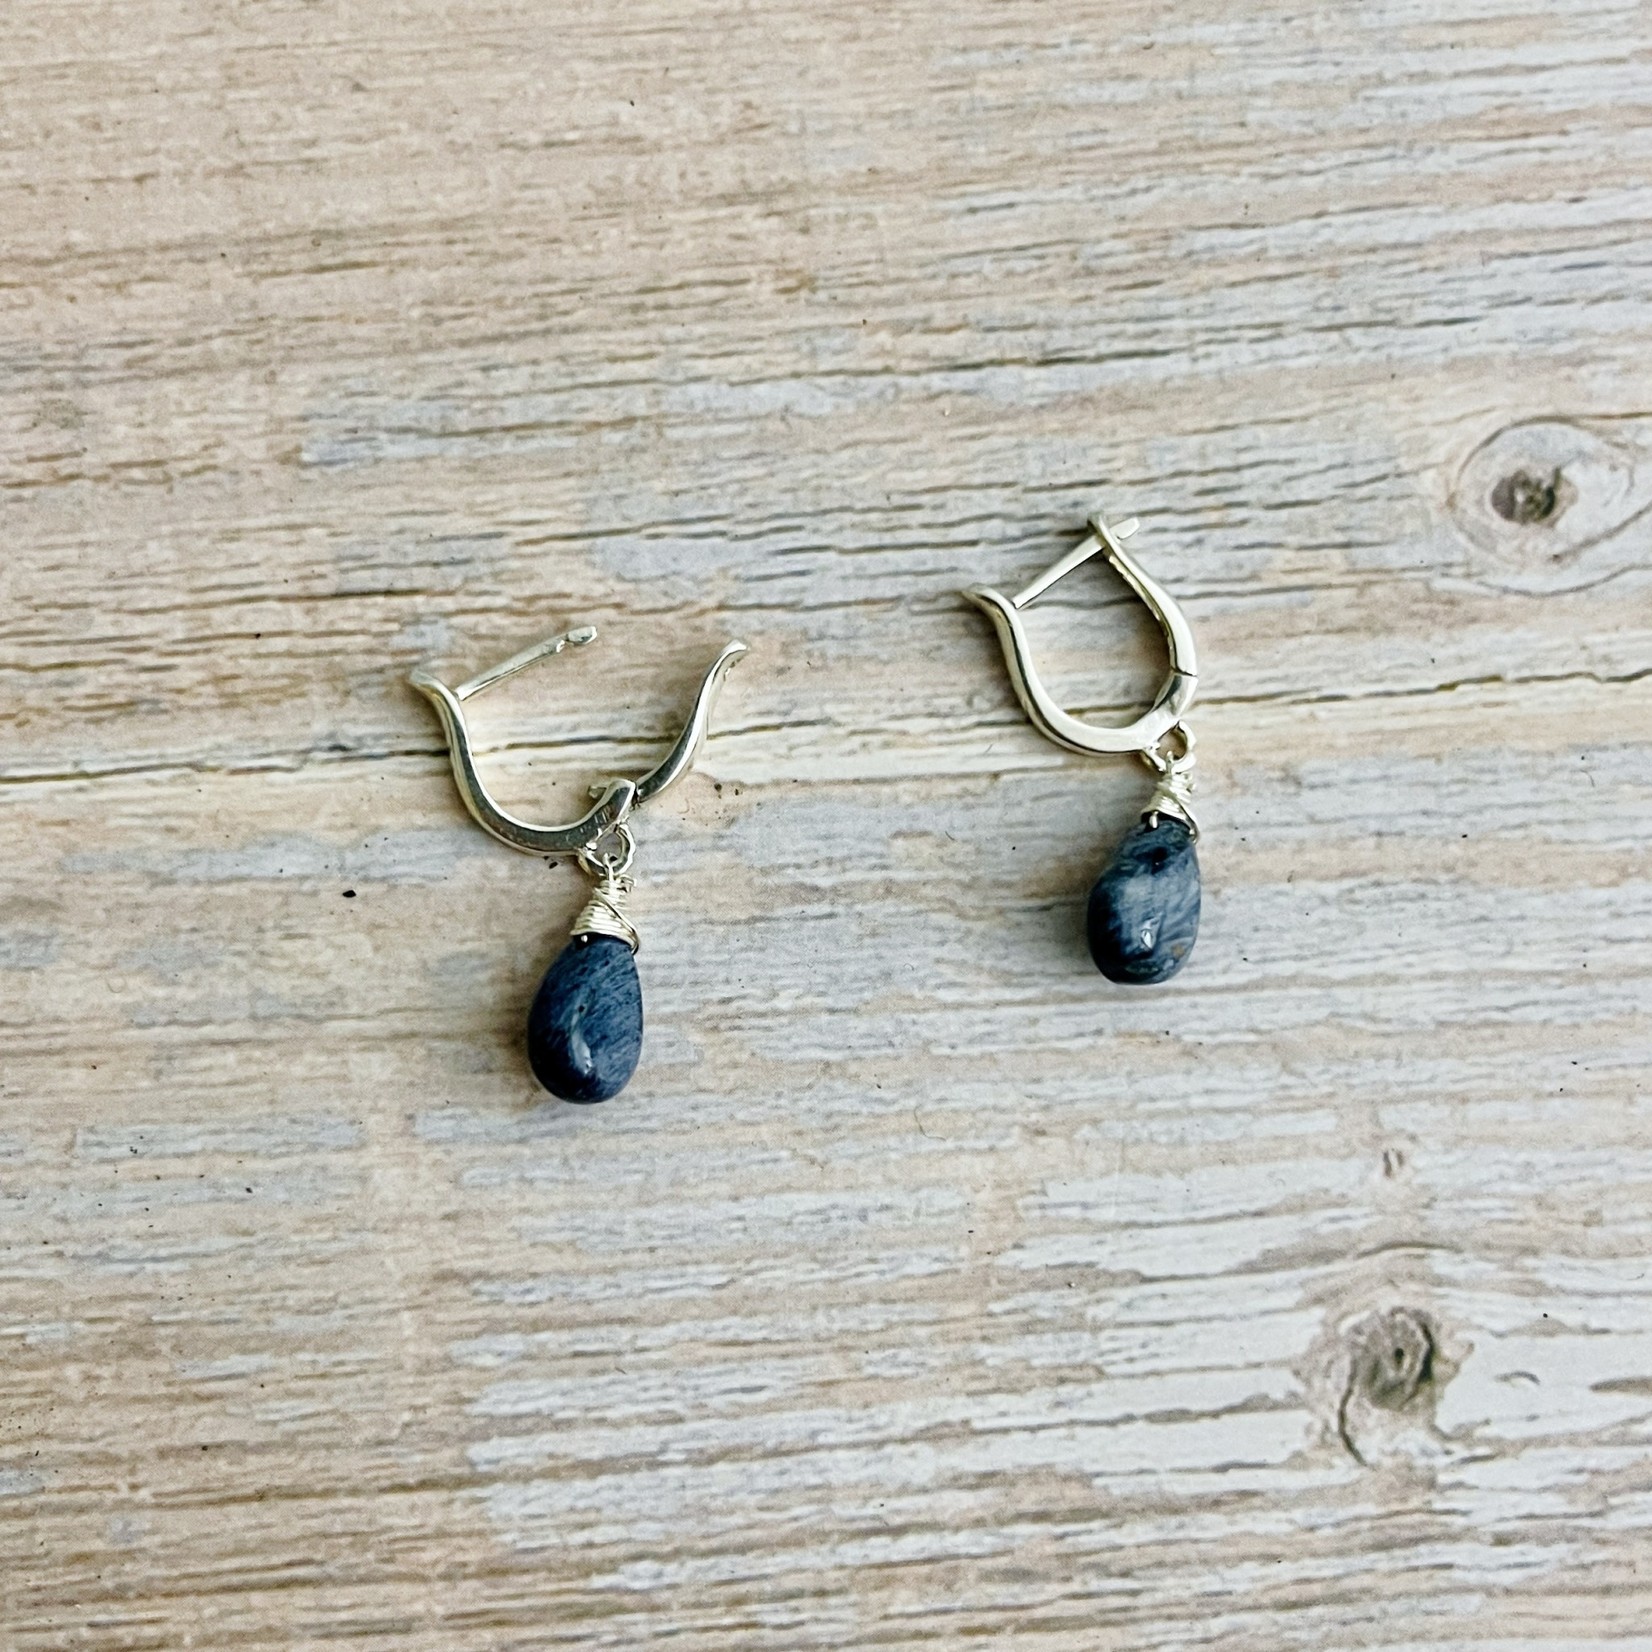 Handmade Earrings with lyre shaped hoop, peitersite briolette